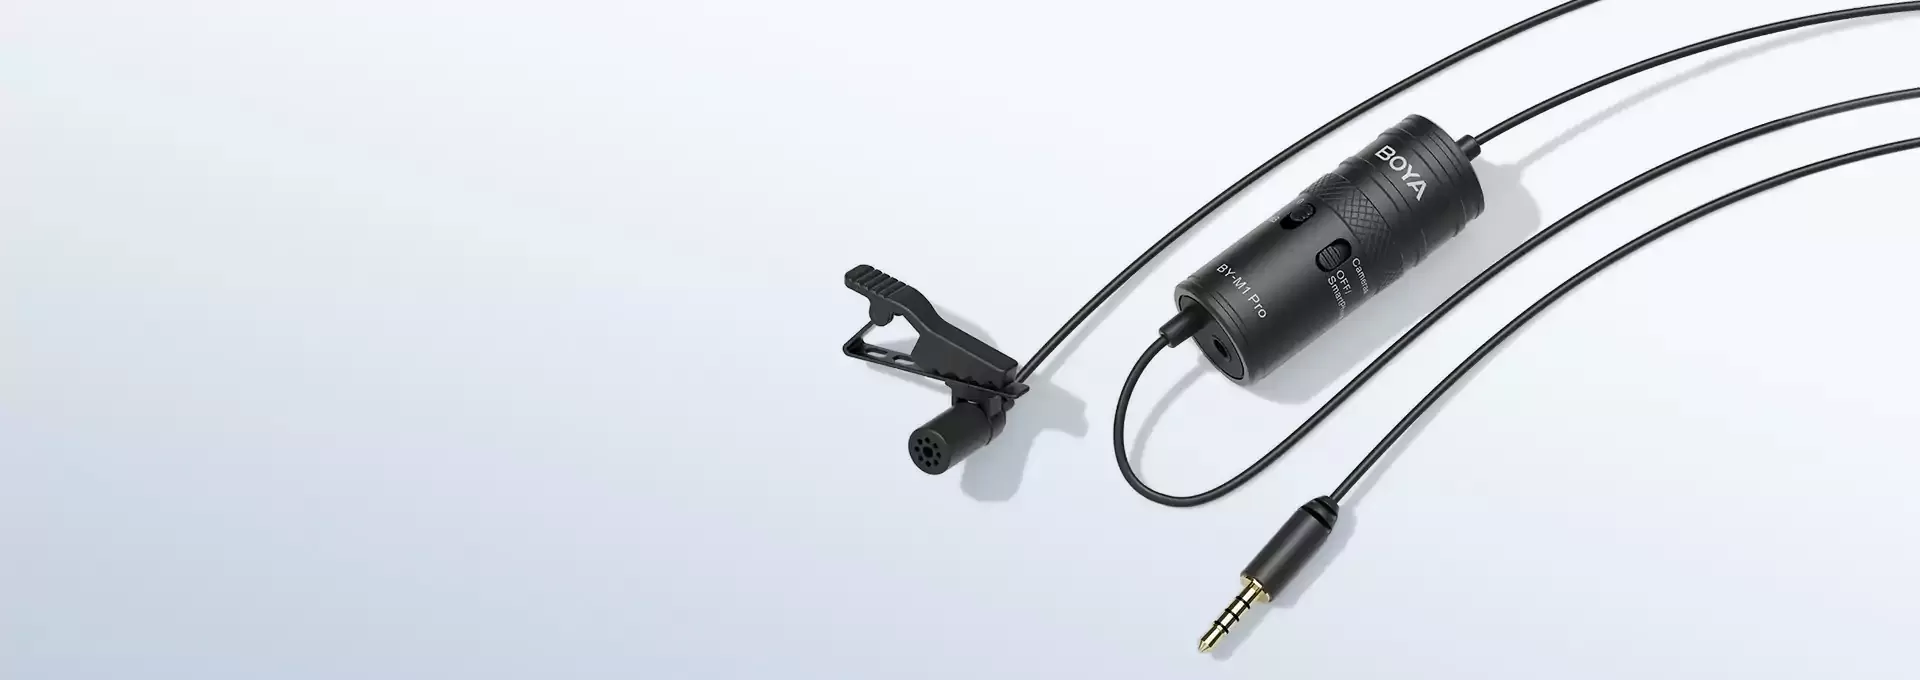 میکروفون یقه ای با سیم بویا مدل BY-M1 Pro BOYA